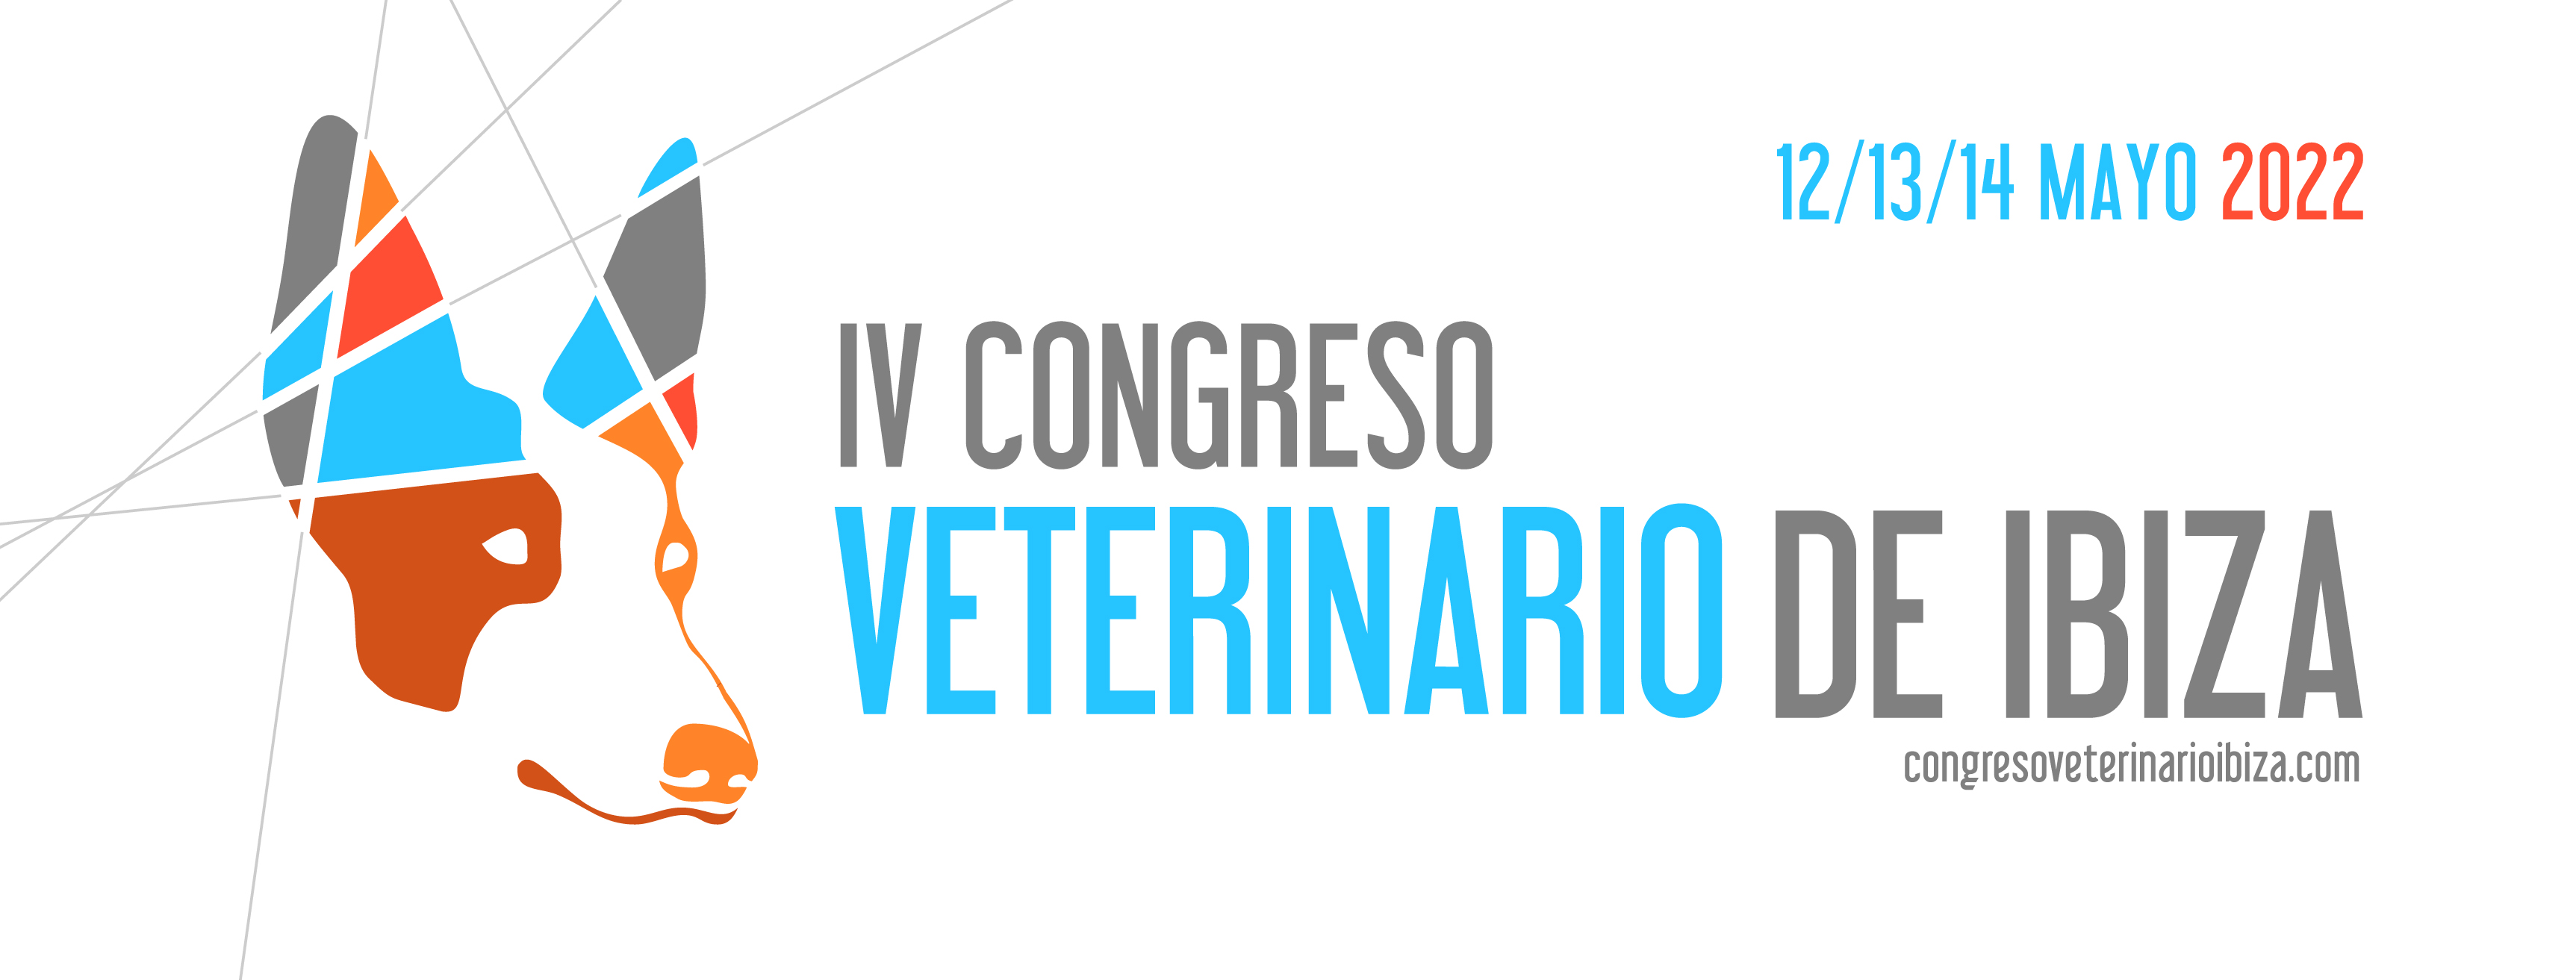 Congreso Vetrinario Ibiza 2022